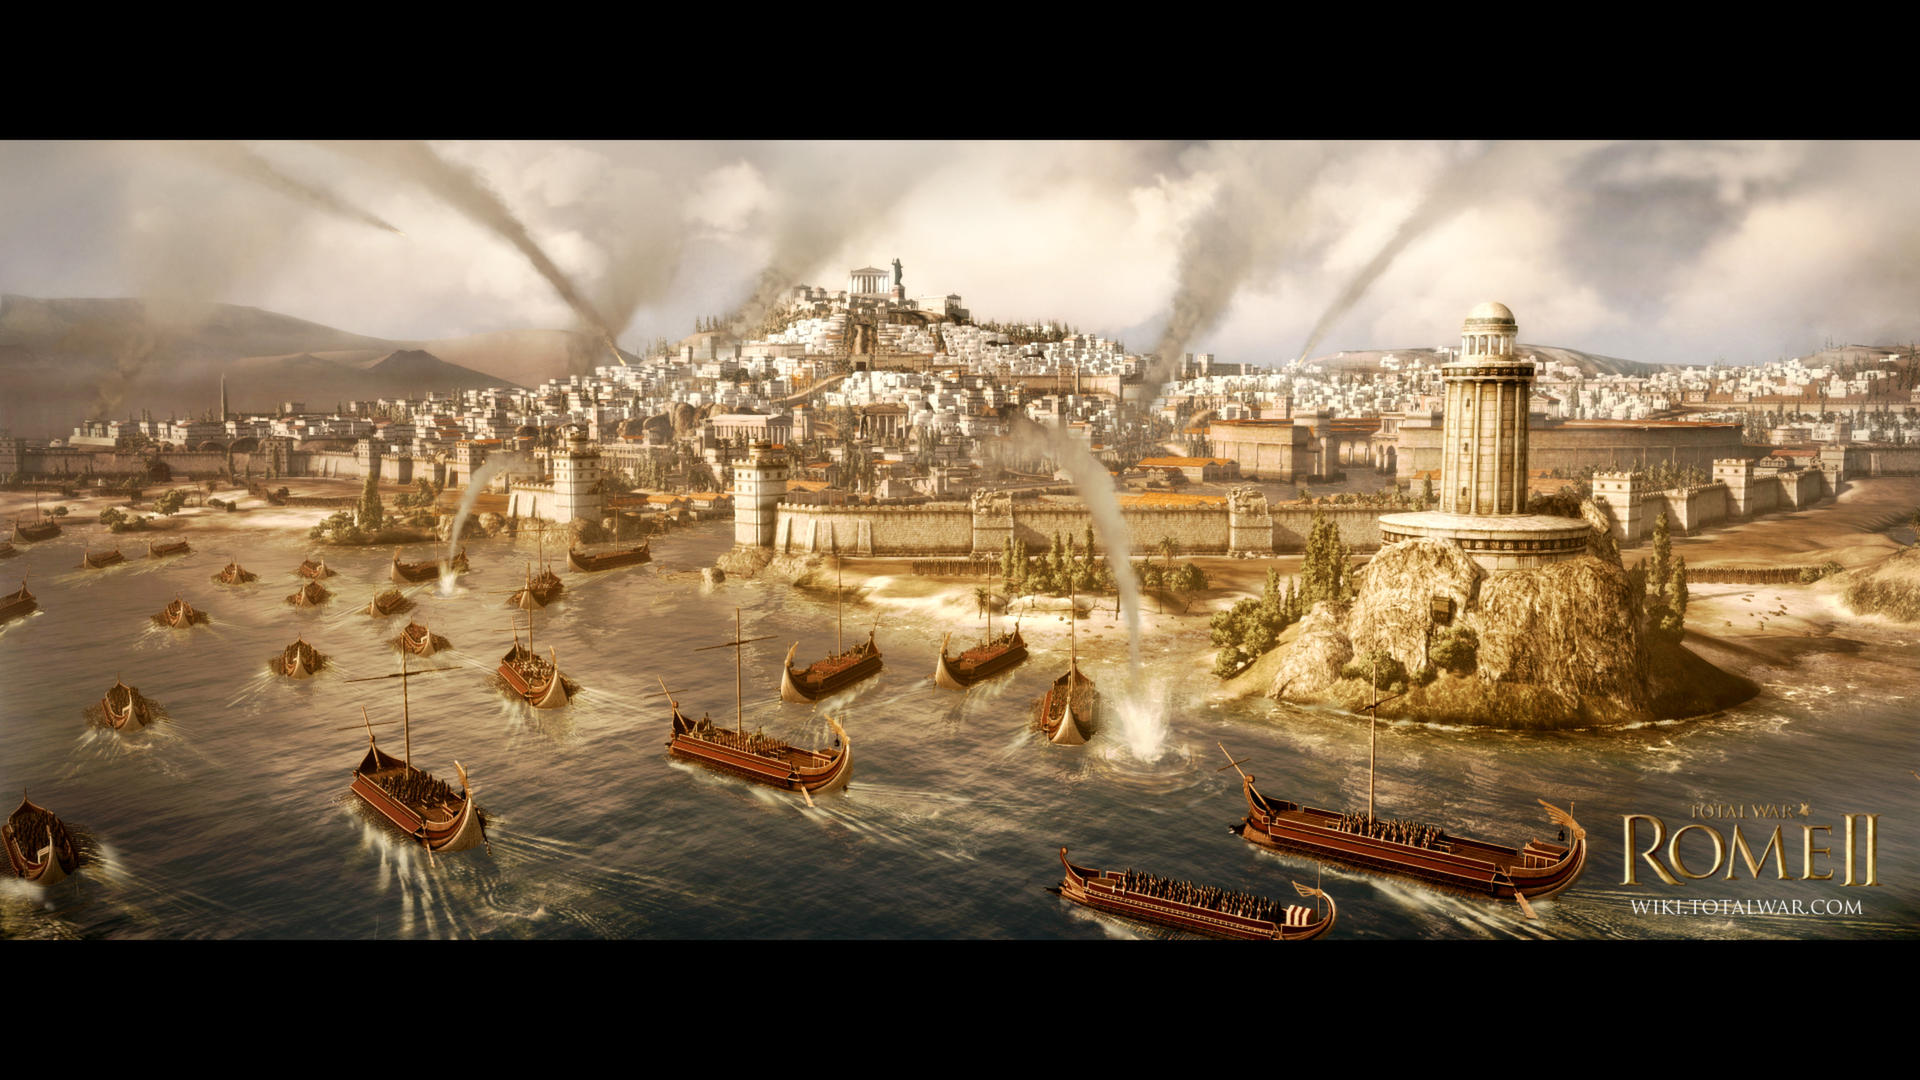 Total War: ROME II - Emperor Editionのキャプチャ